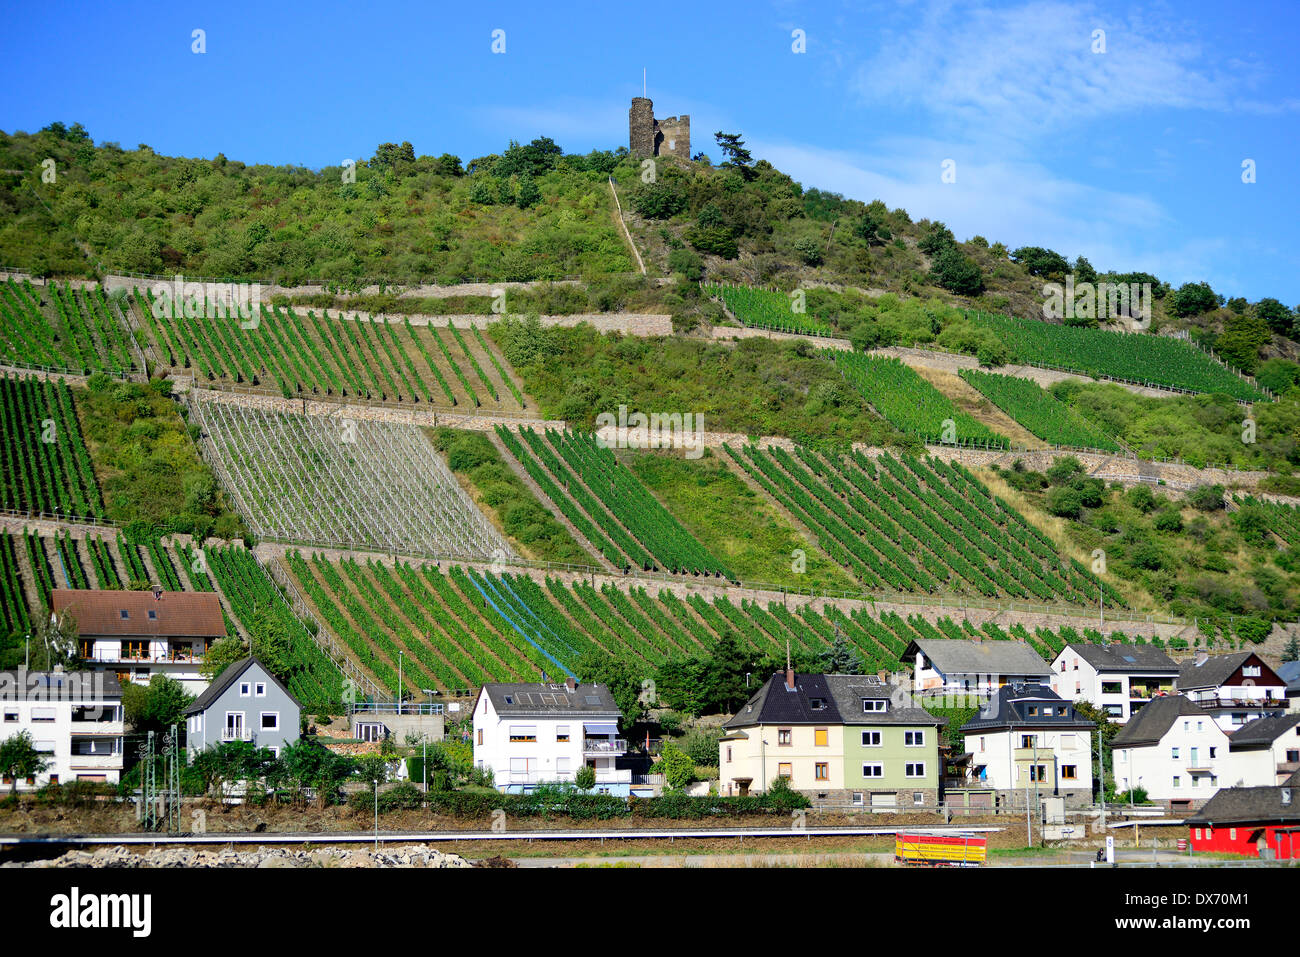 La ville sur la vallée de la rivière du Rhin Allemagne Europe Vignobles VIGNOBLES DE CROISIÈRE Banque D'Images